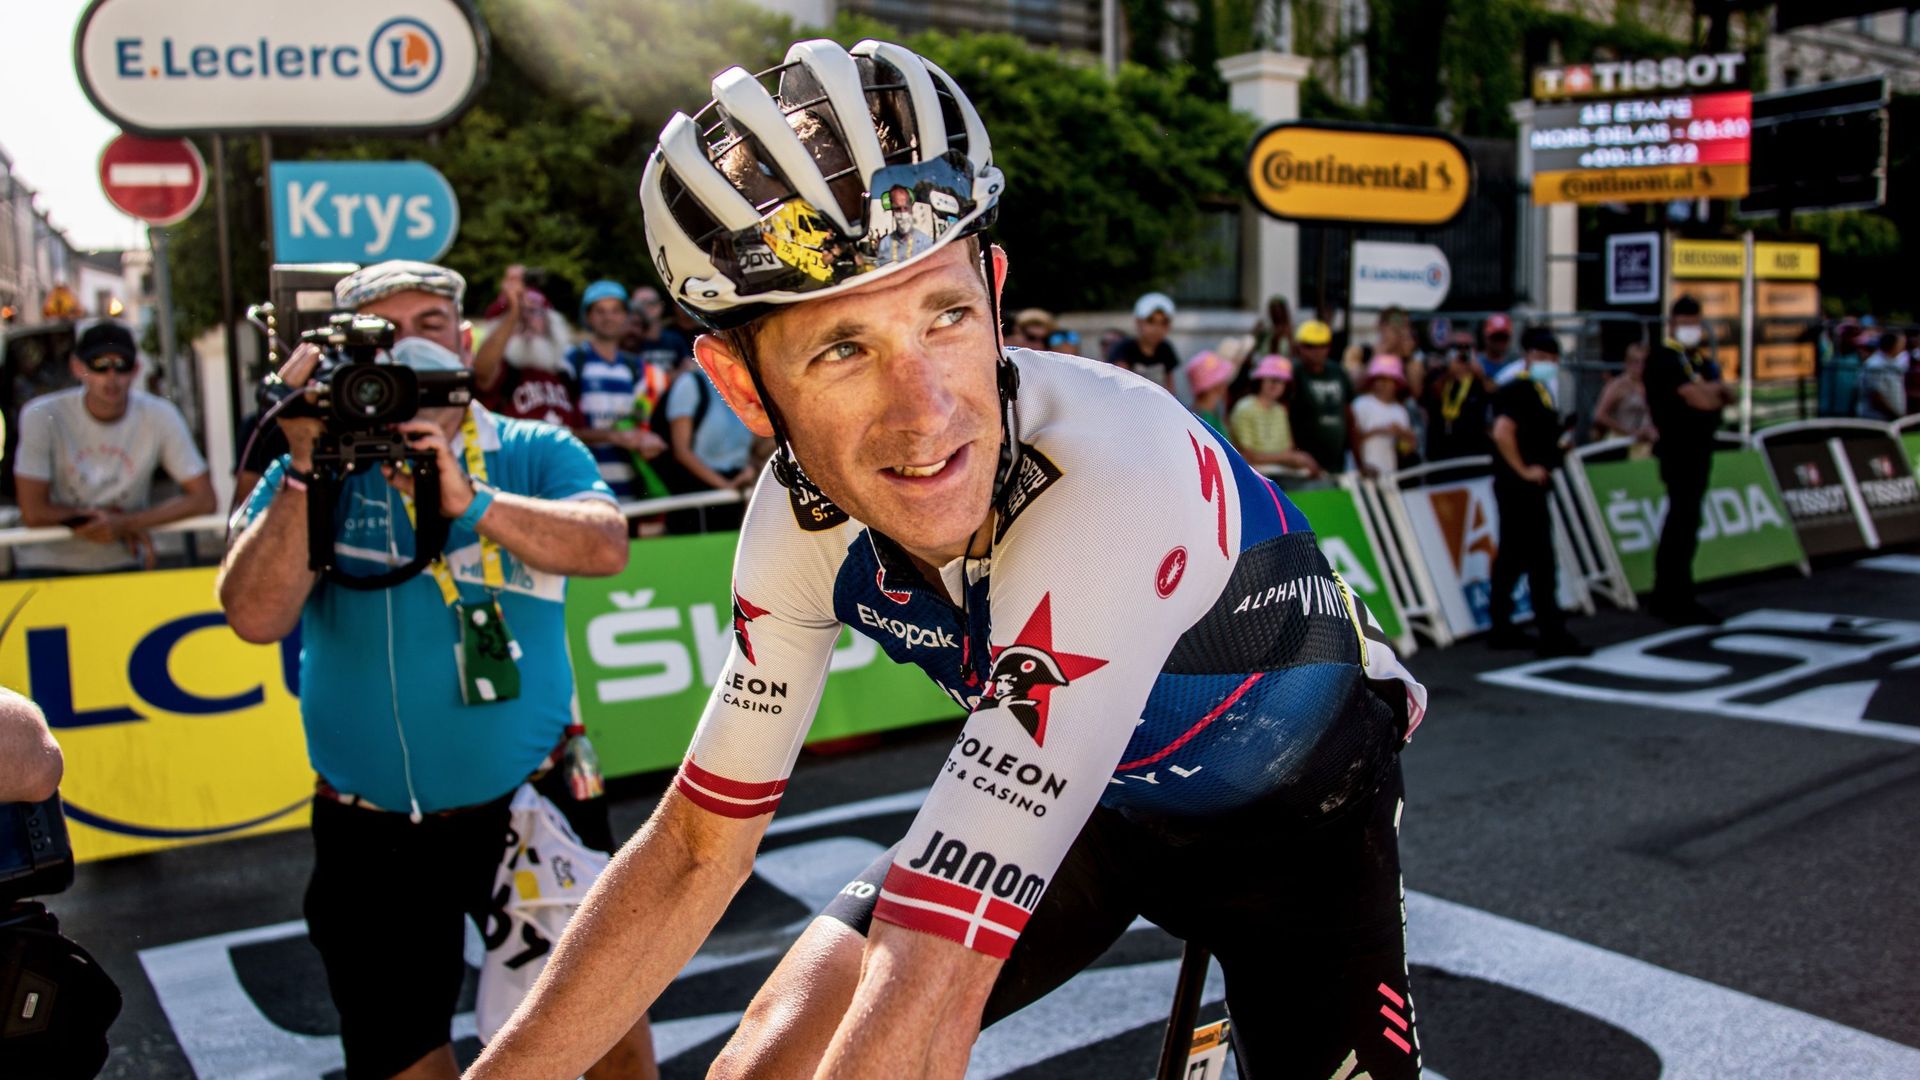 Michaël Morkov franchit la ligne d’arrivée hors délai lors du Tour de France 2022. Diminué physiquement, il était arrivé avec 65 minutes de retard du vainqueur, Jasper Philipsen.